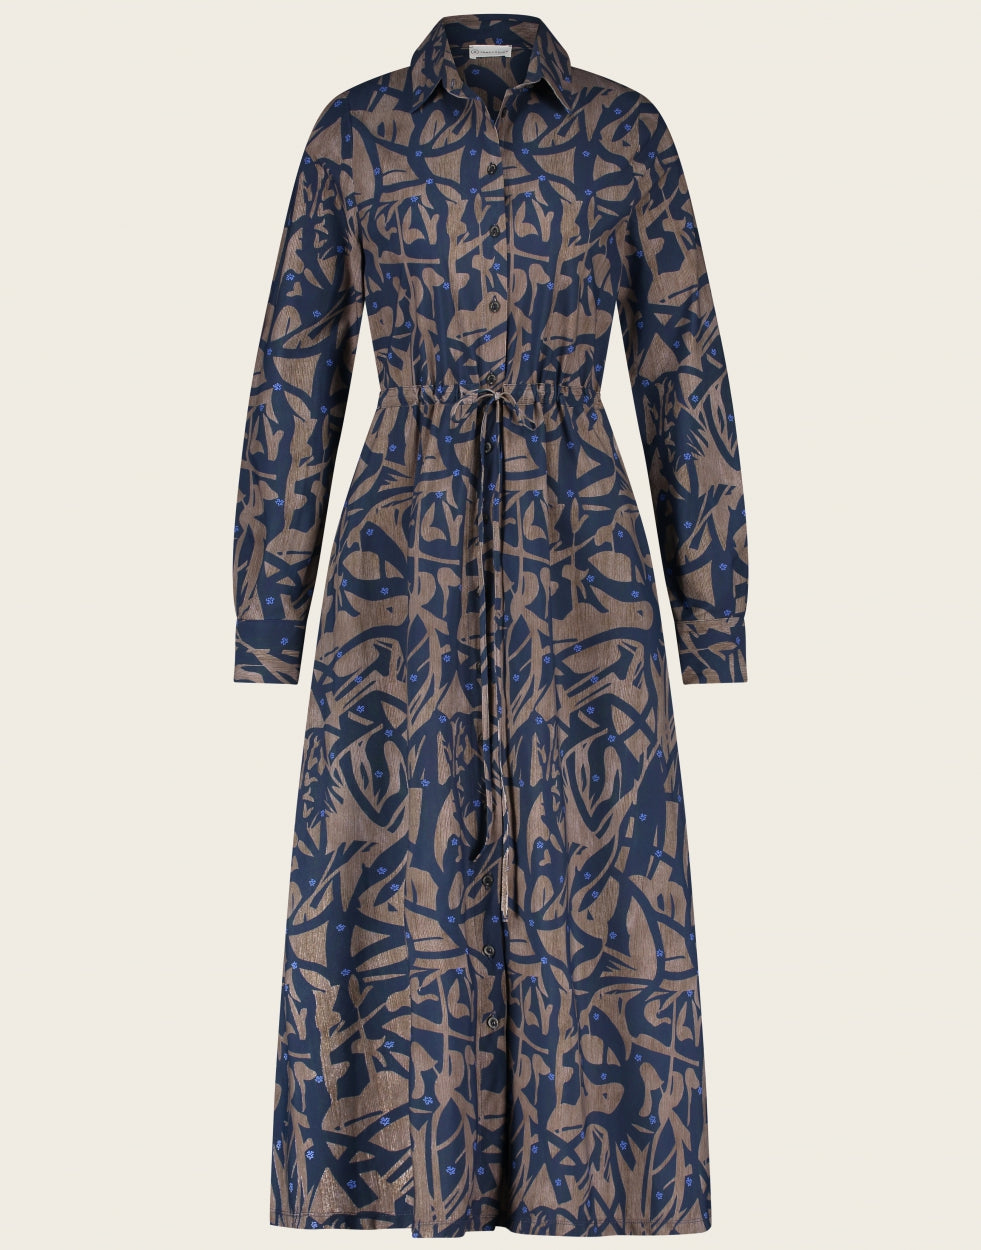 Dress Linna UK92224040 van Jane Lushka is een prachtige jurk van de bekende travel kwaliteit. Jurk Linna is een lange  doorknoopjurk met kraag in print kleurstelling, bruin, donkerblauw en fel blauw als klein detail. Jurk heeft lange mouwen en een rijgkoord in de taille.